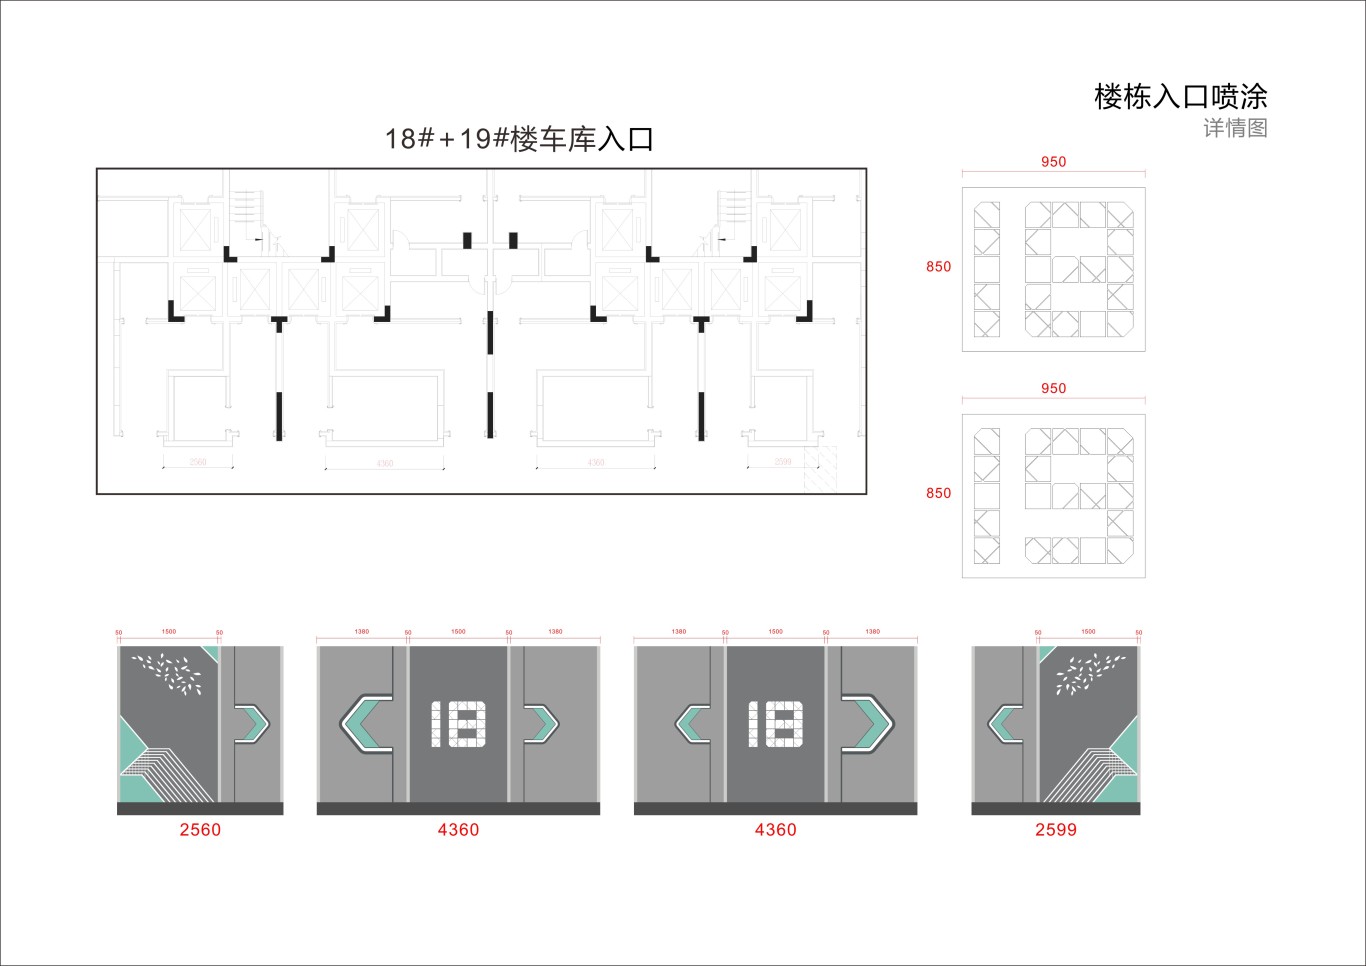 金茂地产 杭州项目地库美化设计图28